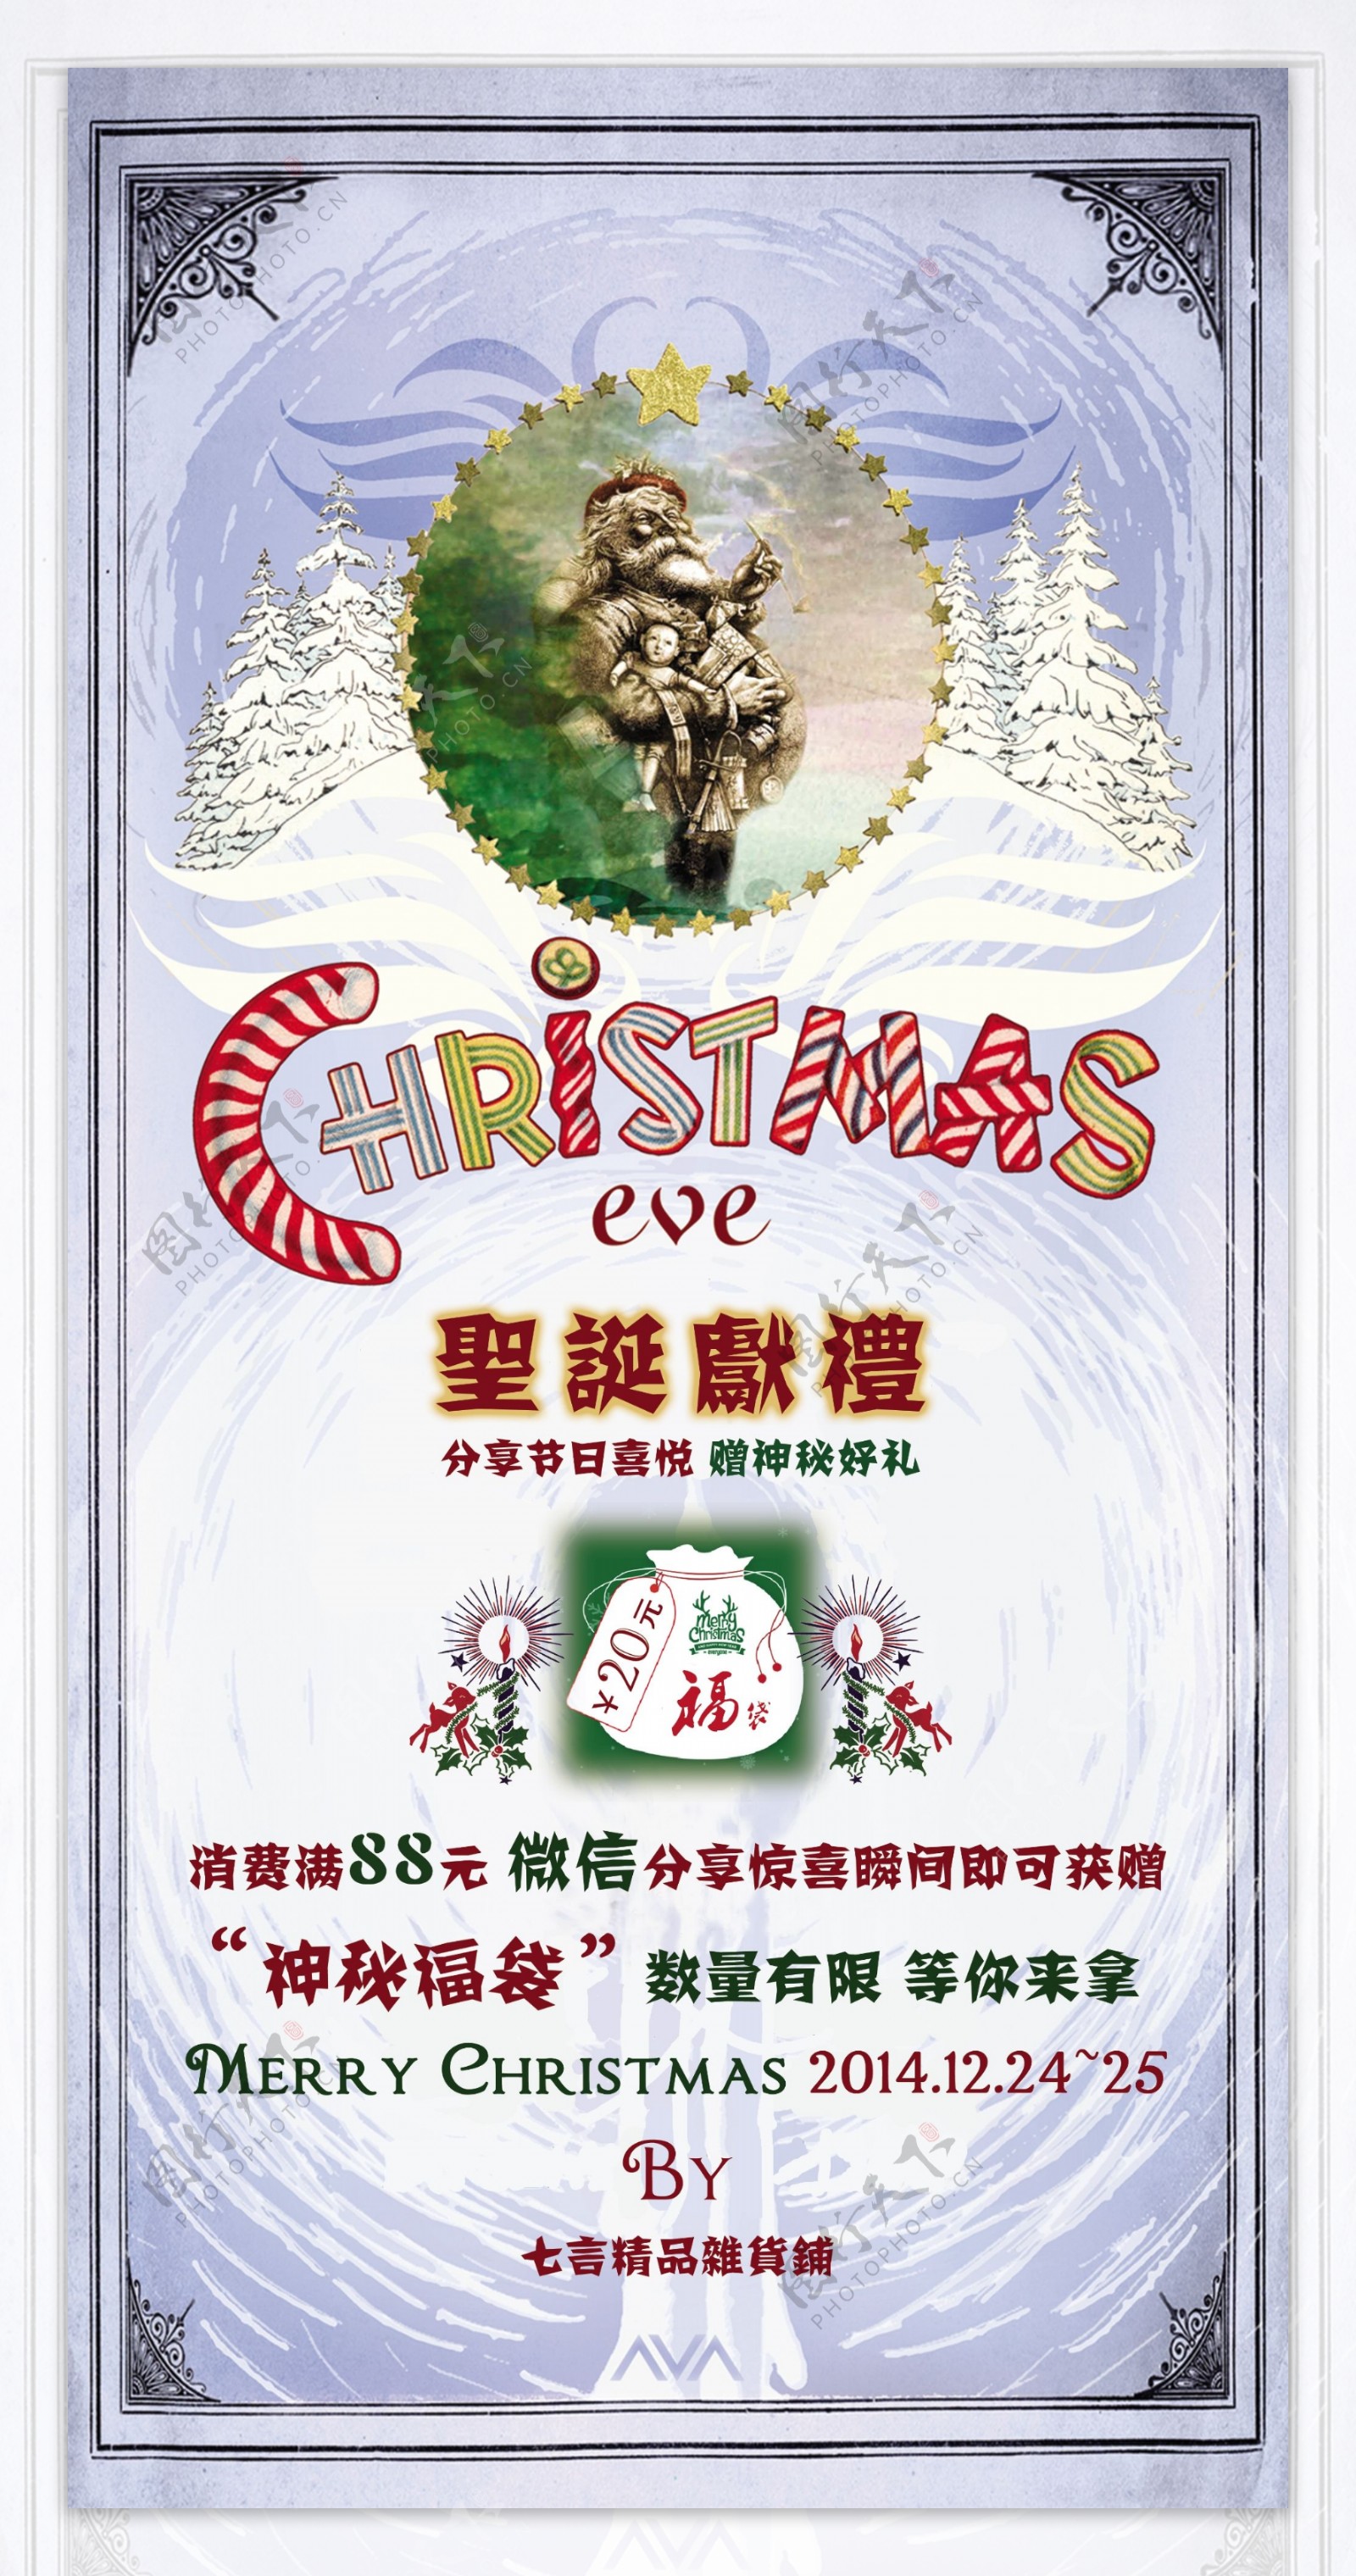 精品店圣诞节活动海报